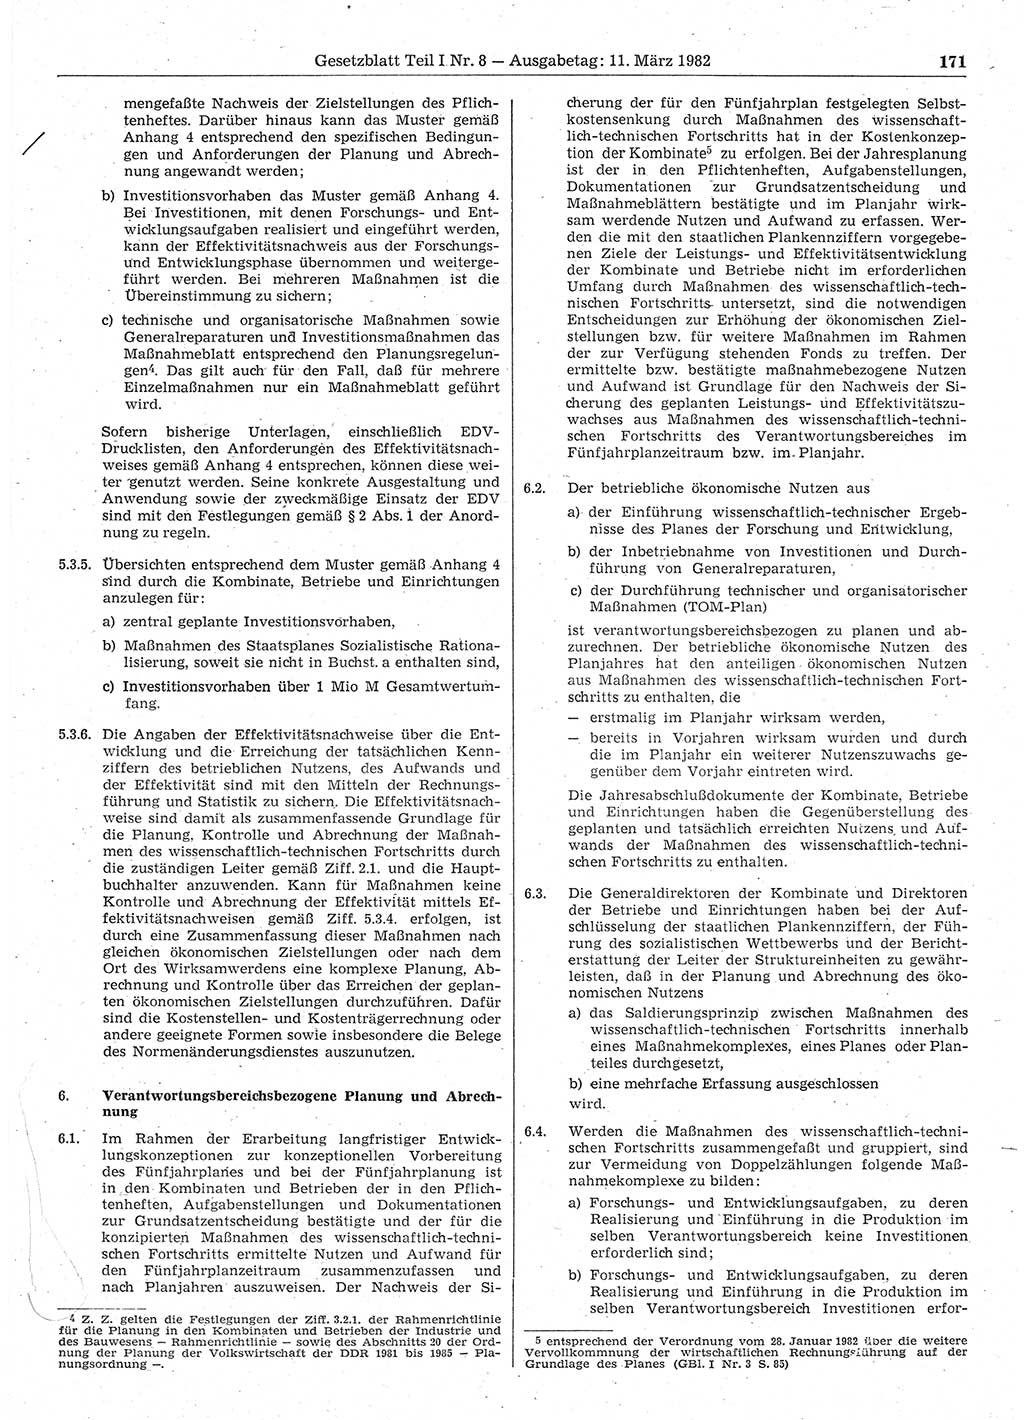 Gesetzblatt (GBl.) der Deutschen Demokratischen Republik (DDR) Teil Ⅰ 1982, Seite 171 (GBl. DDR Ⅰ 1982, S. 171)